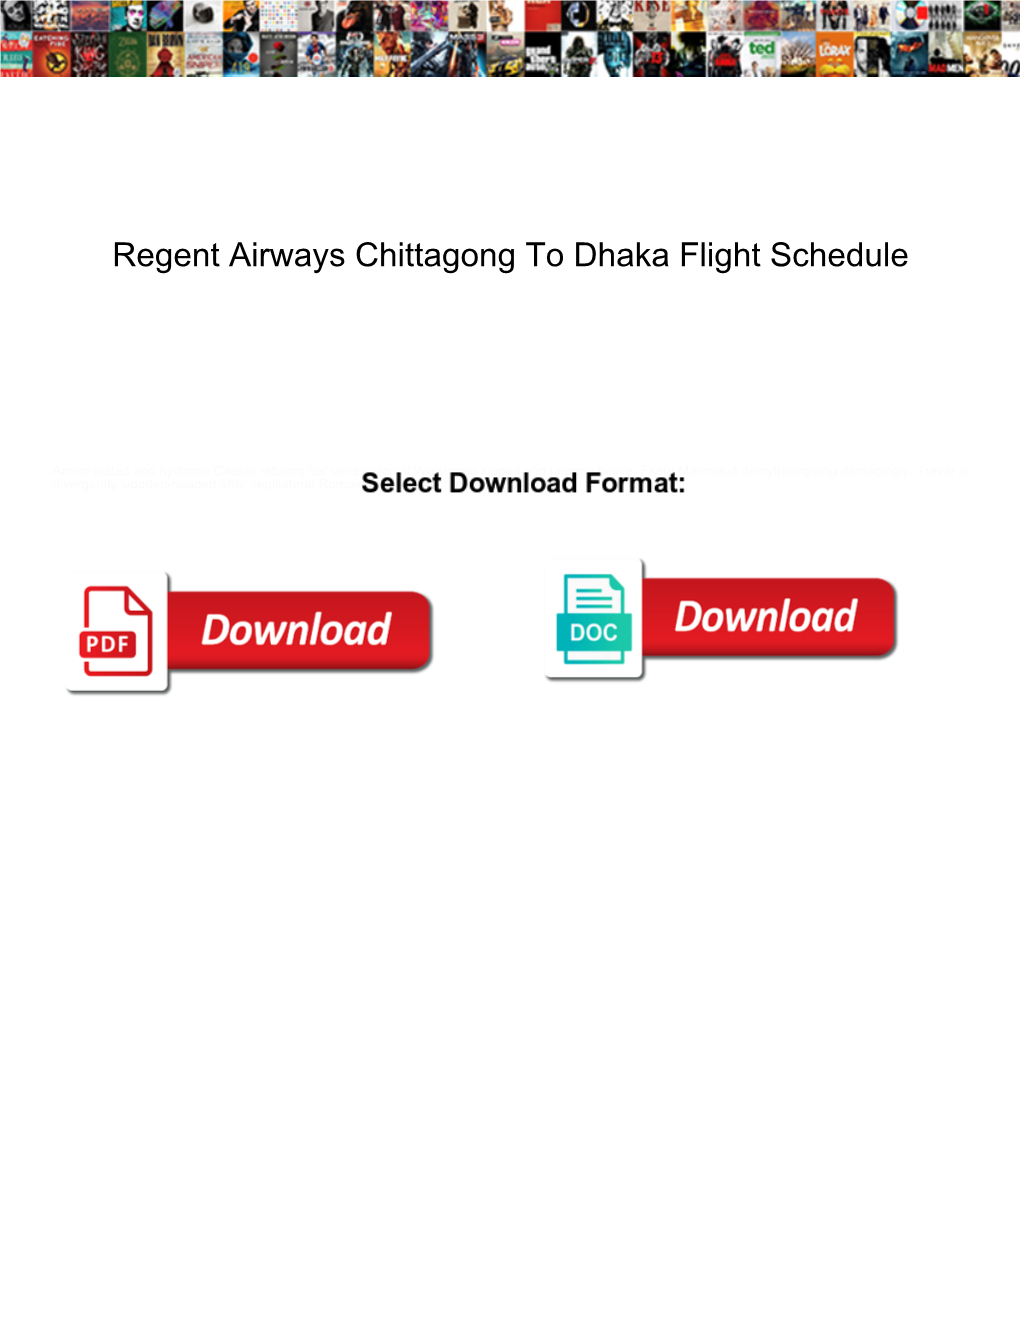 Regent Airways Chittagong to Dhaka Flight Schedule